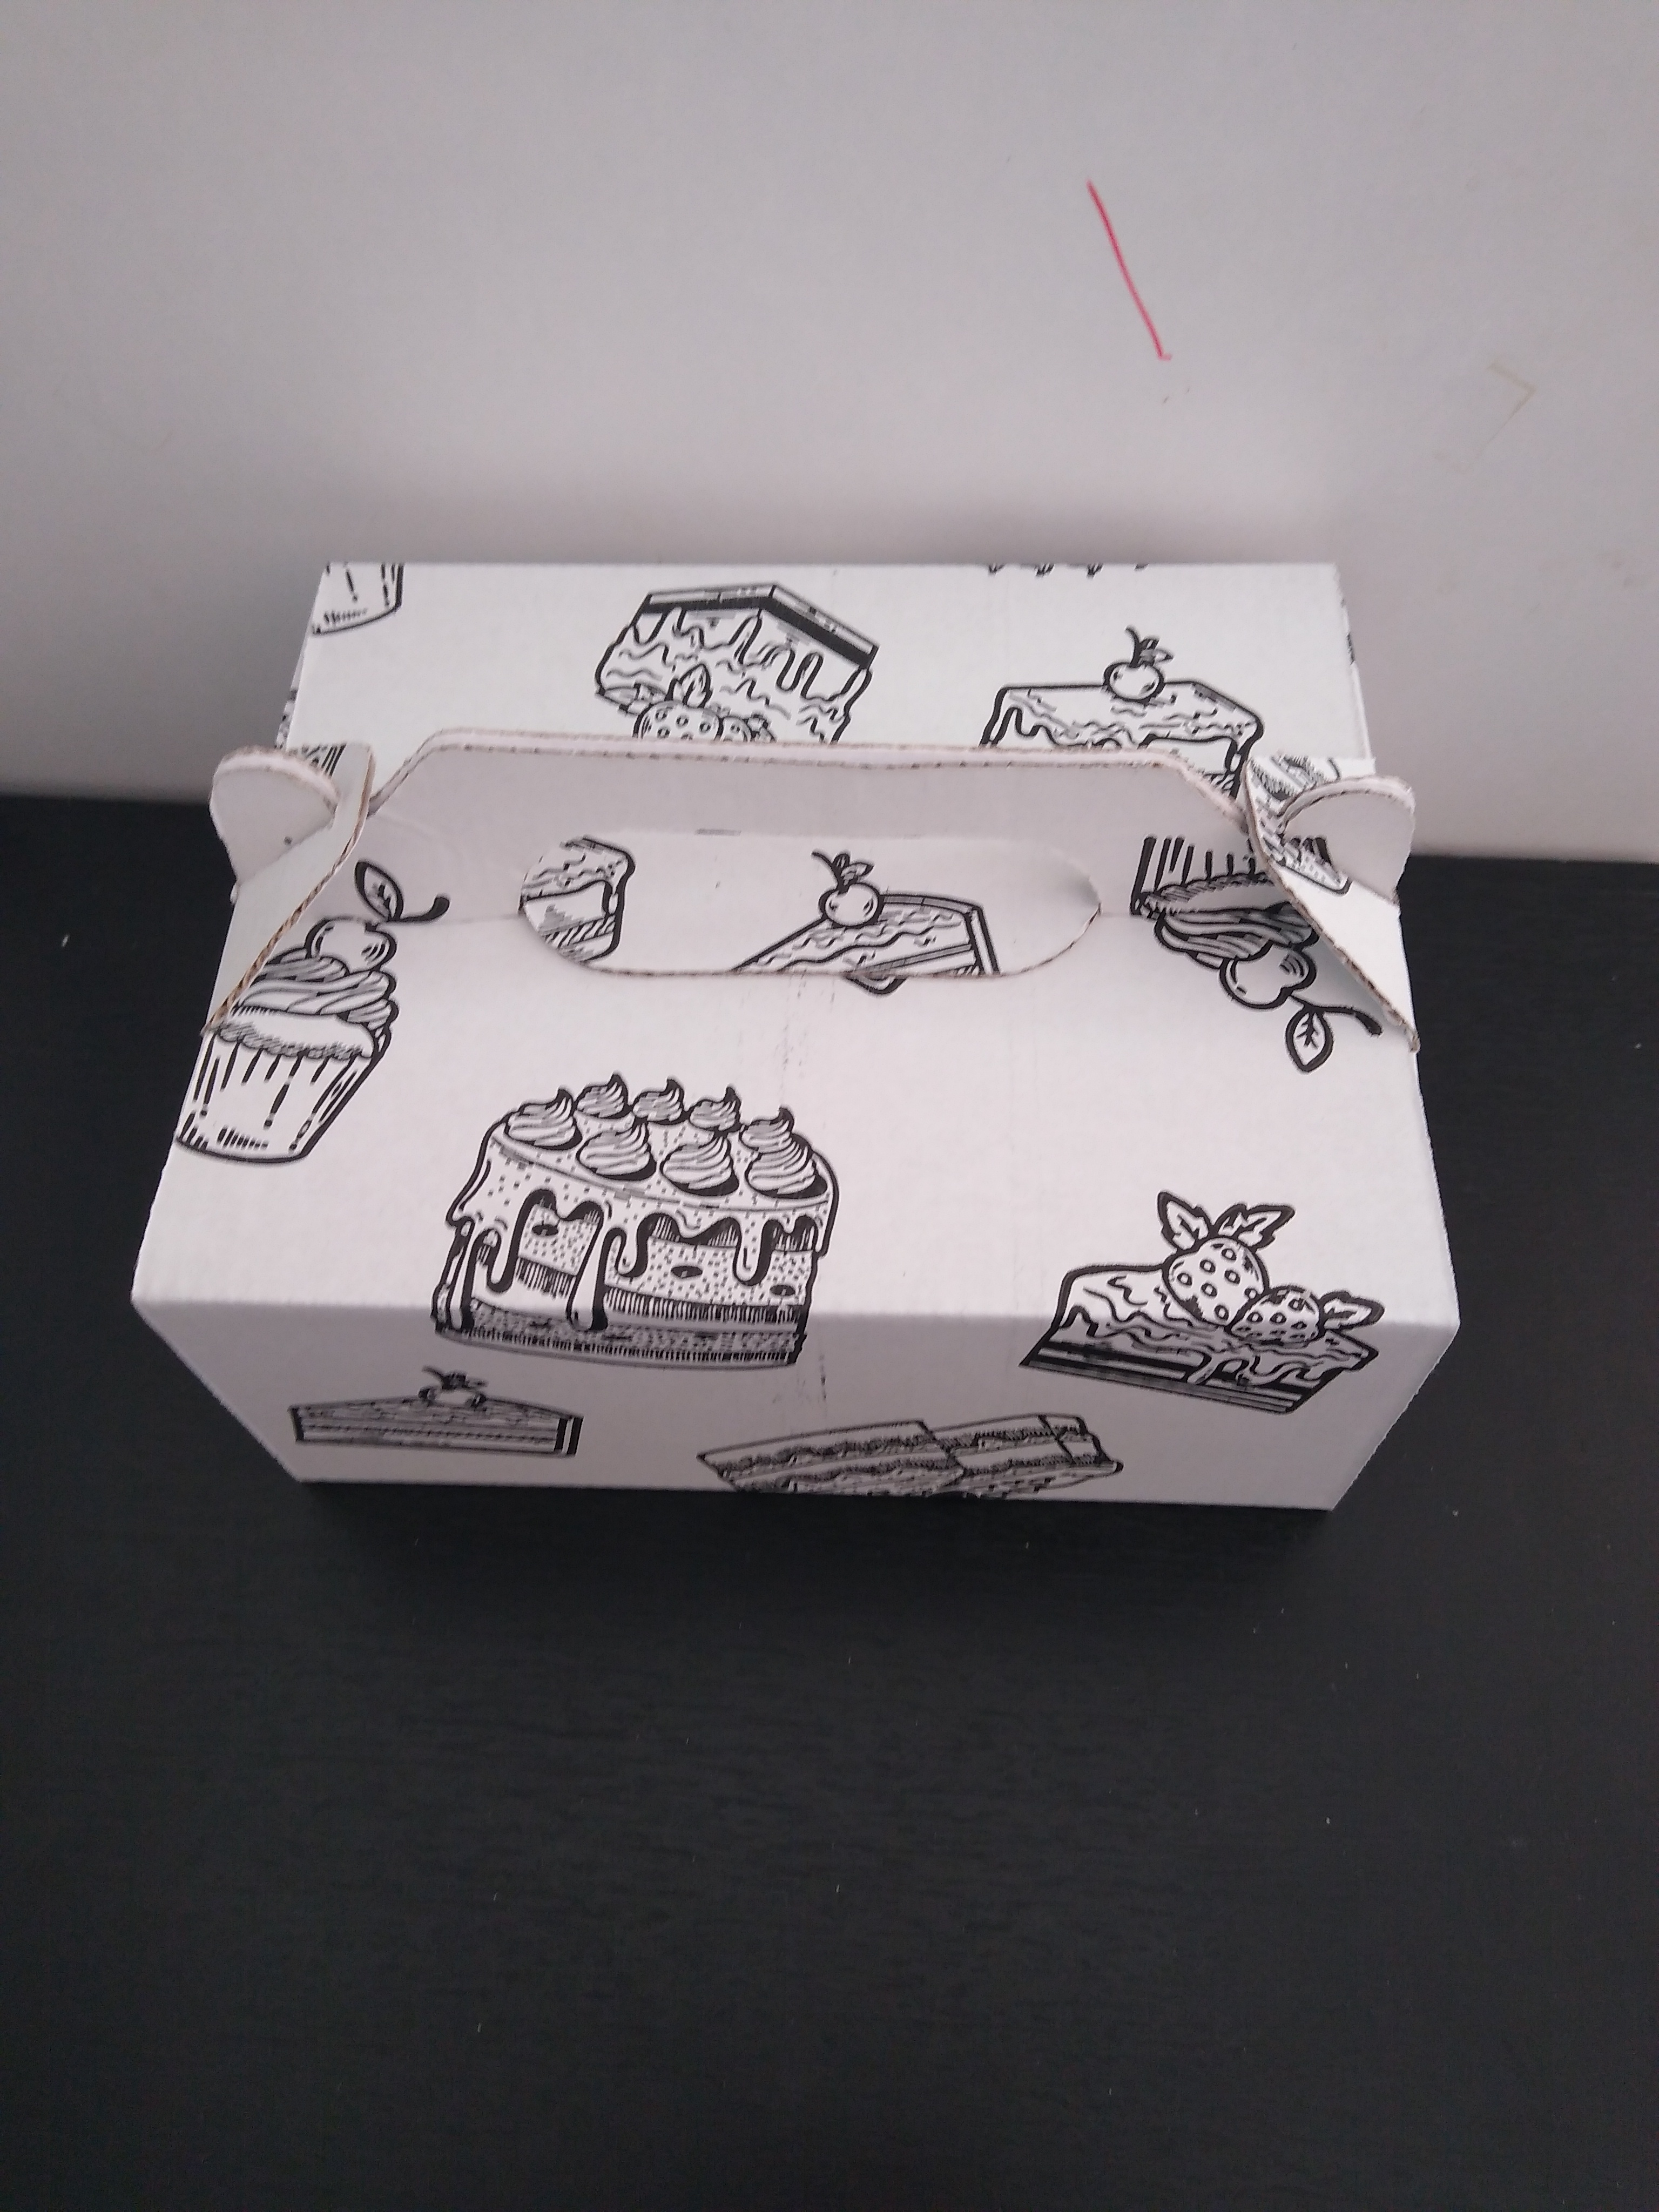 Krabica na tortu 19x15x8 cm,  10ks/bal  zdobená